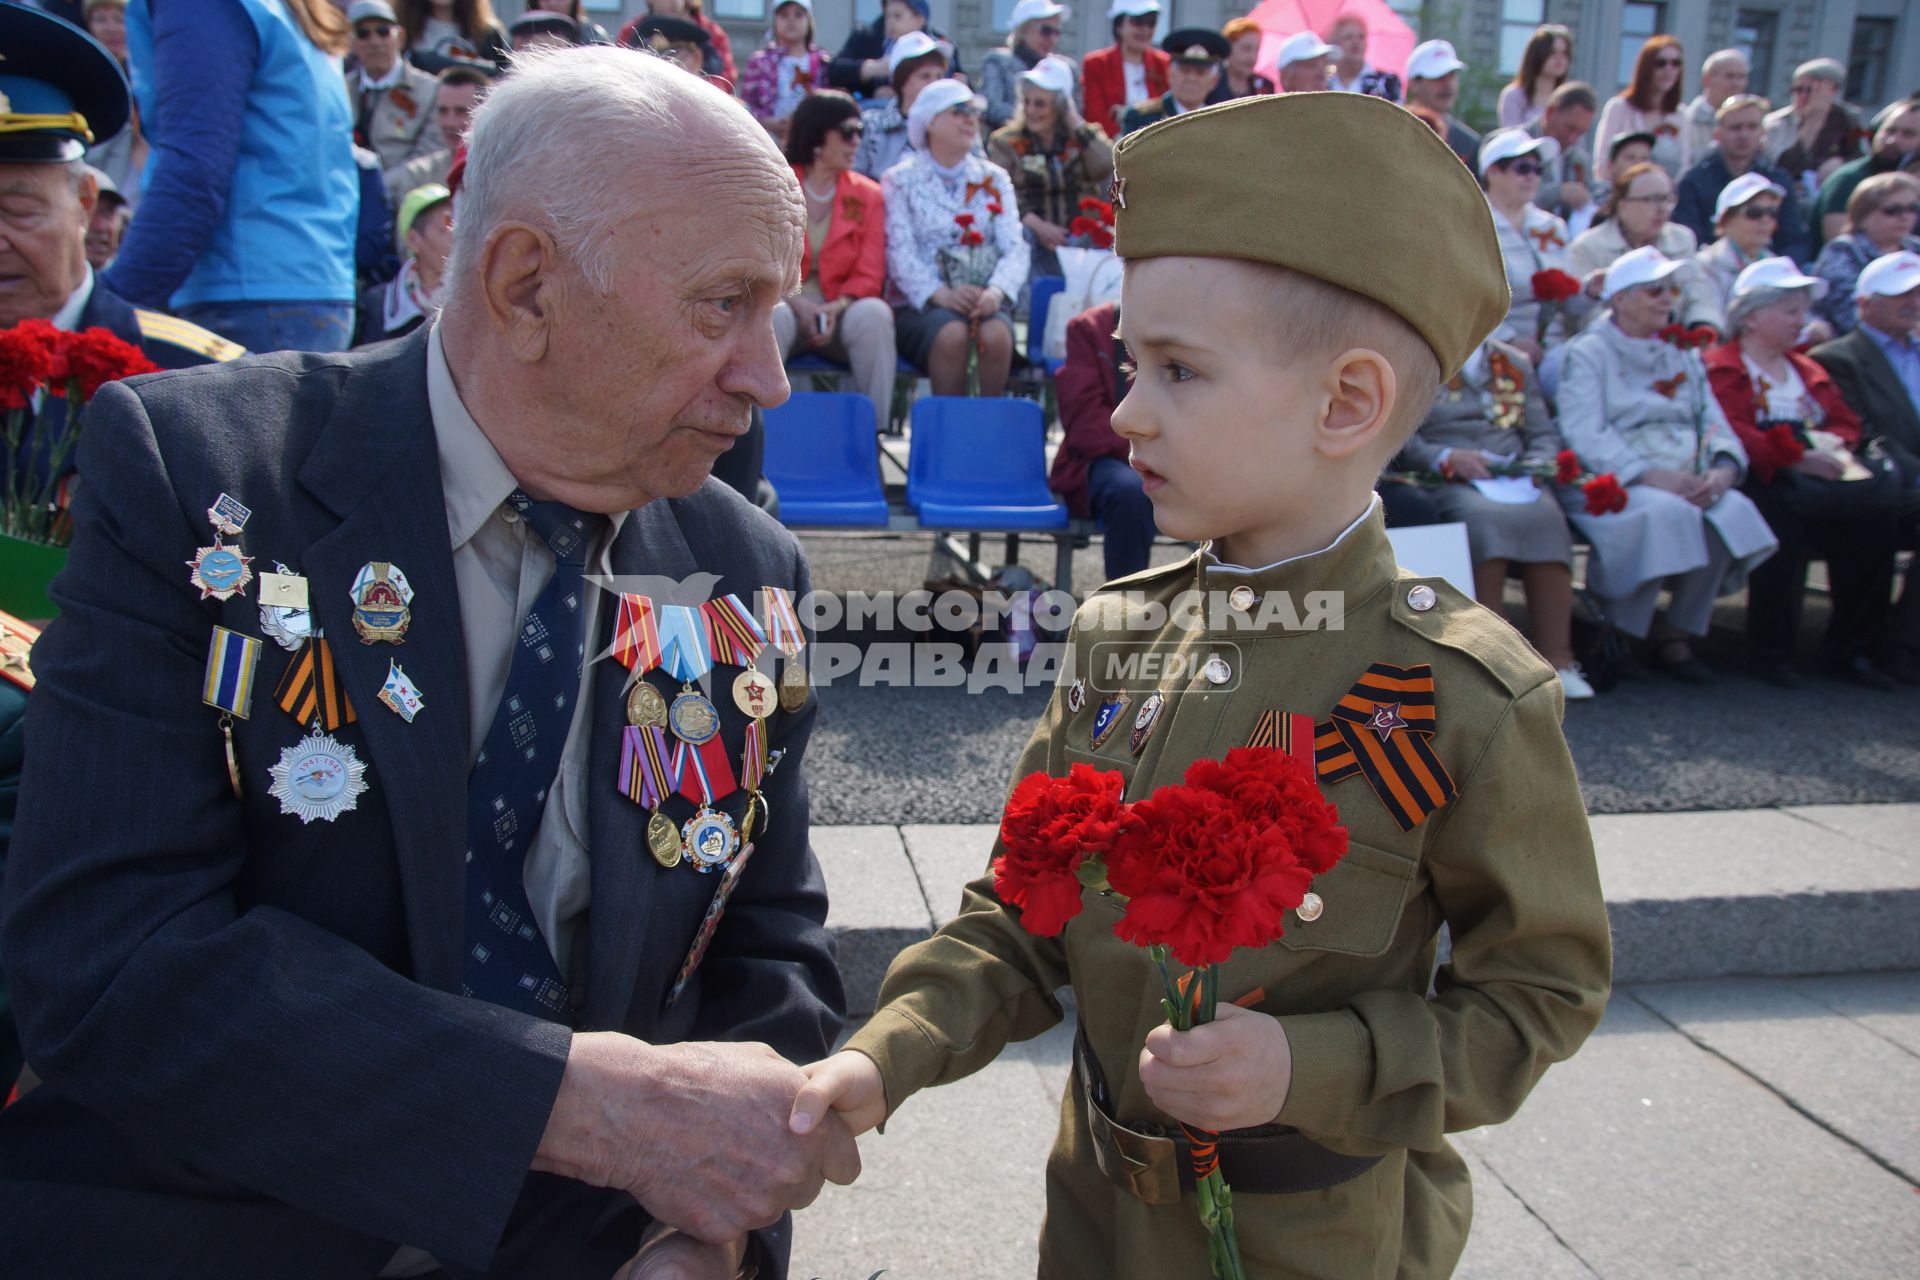 Самара. Мальчик поздравляет ветерана Великой Отечественной войны  во время празднования Дня Победы.